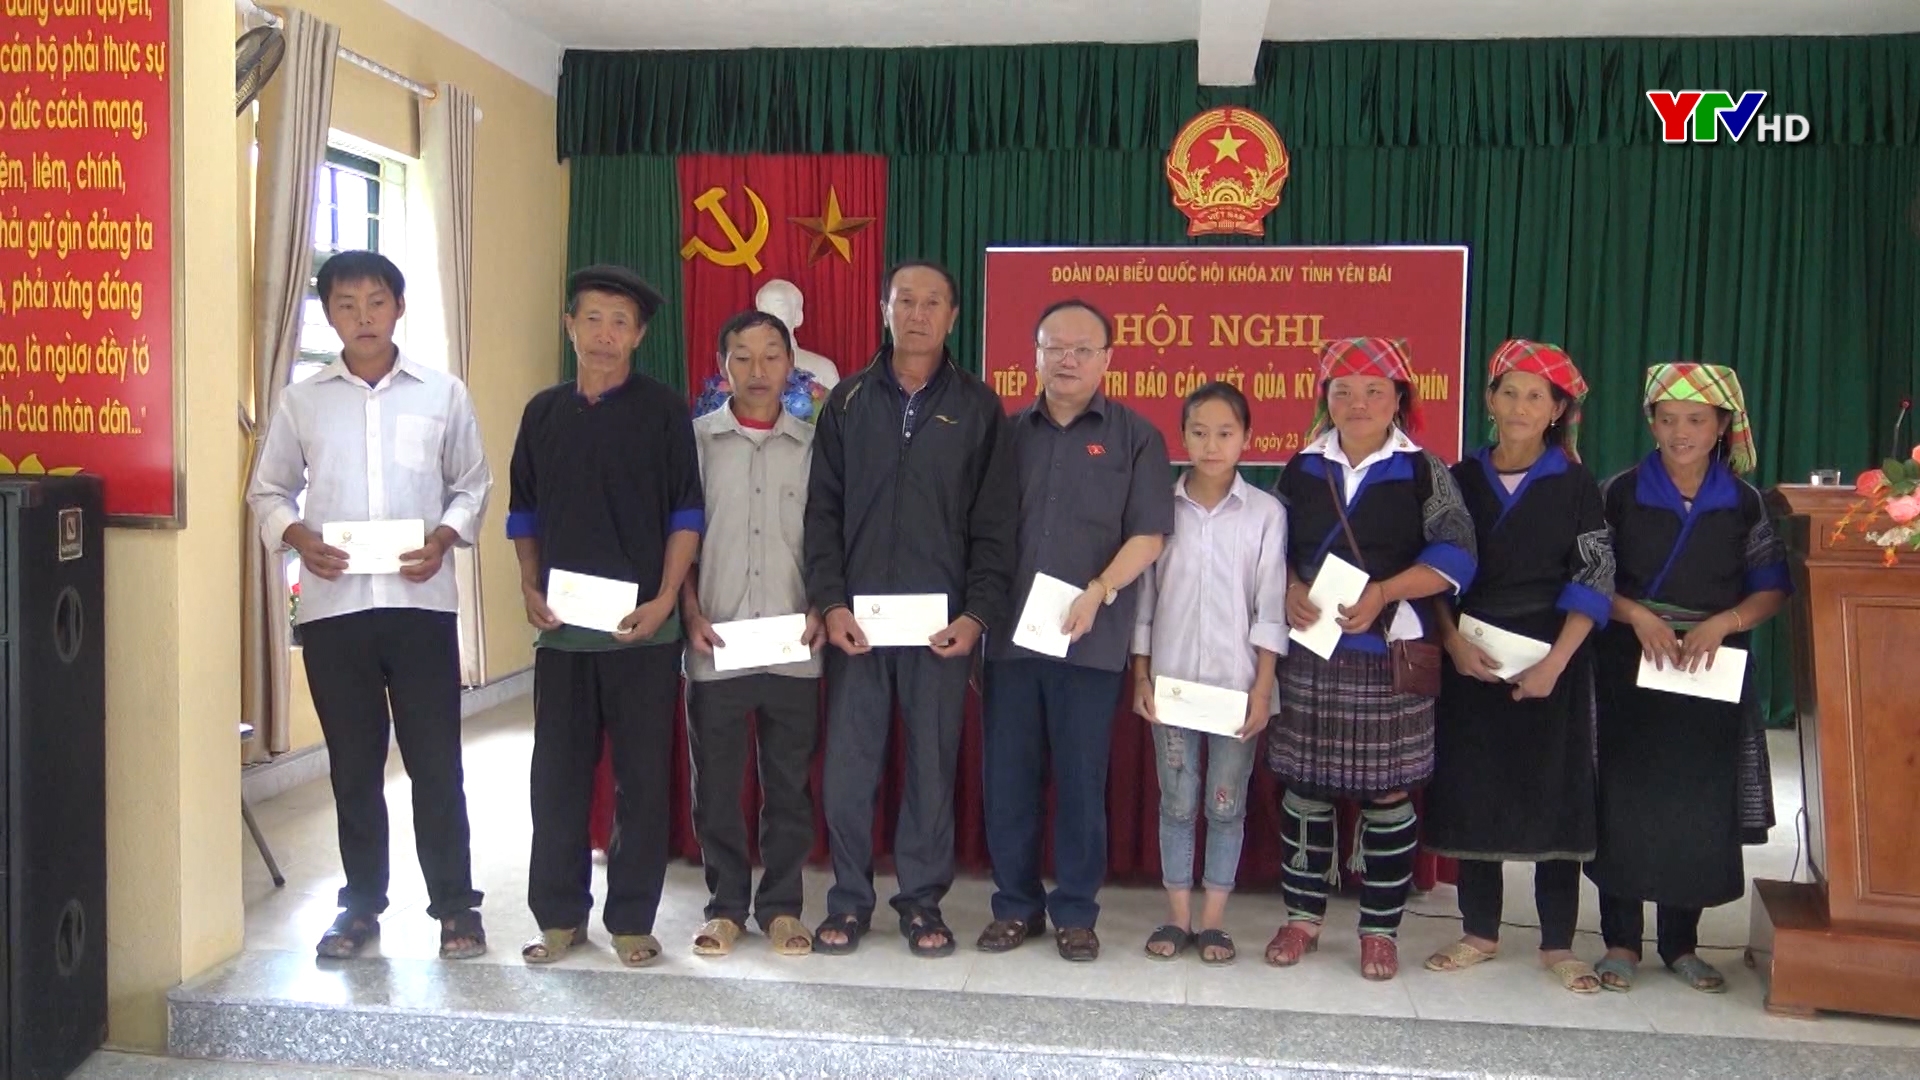 Đoàn đại biểu Quốc hội tỉnh Yên Bái tiếp xúc cử tri huyện Mù Cang Chải